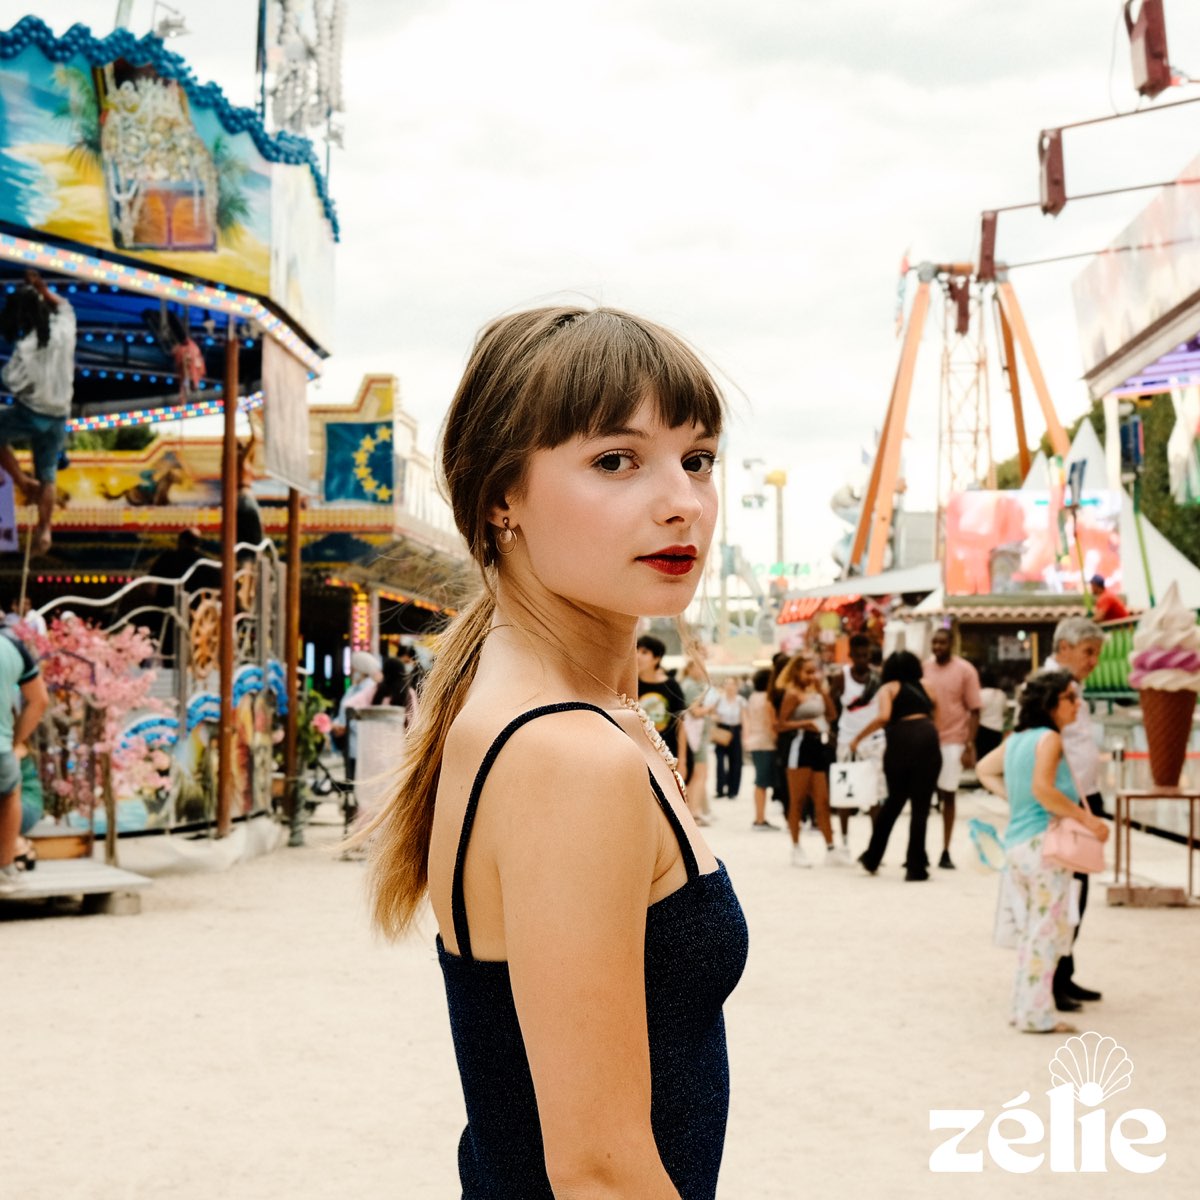 Au revoir mon amour - Single - Album by Zélie - Apple Music